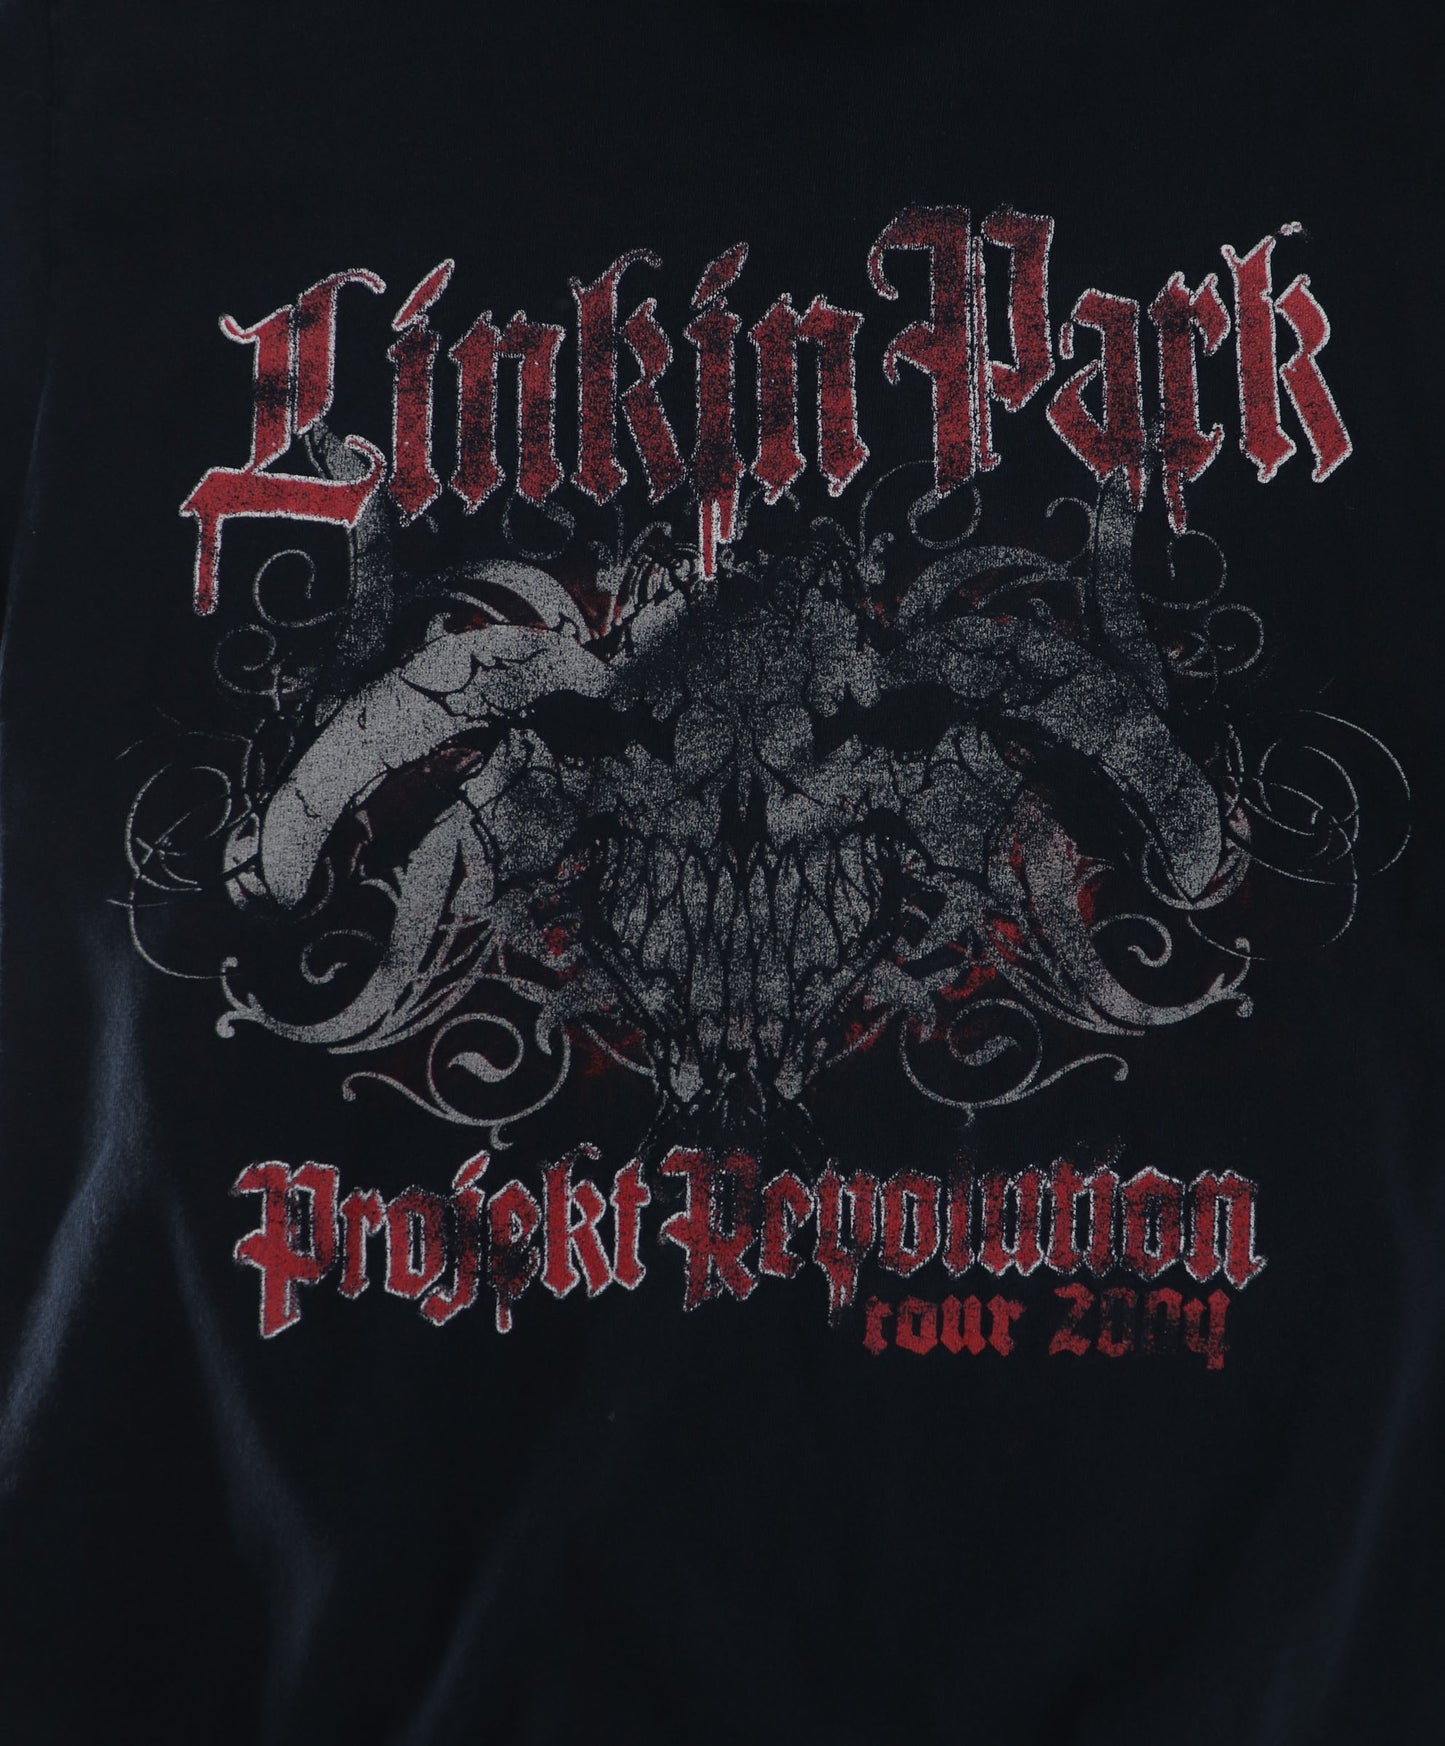 LINKIN PARK PROJECT REVOLUTION TOUR 2004